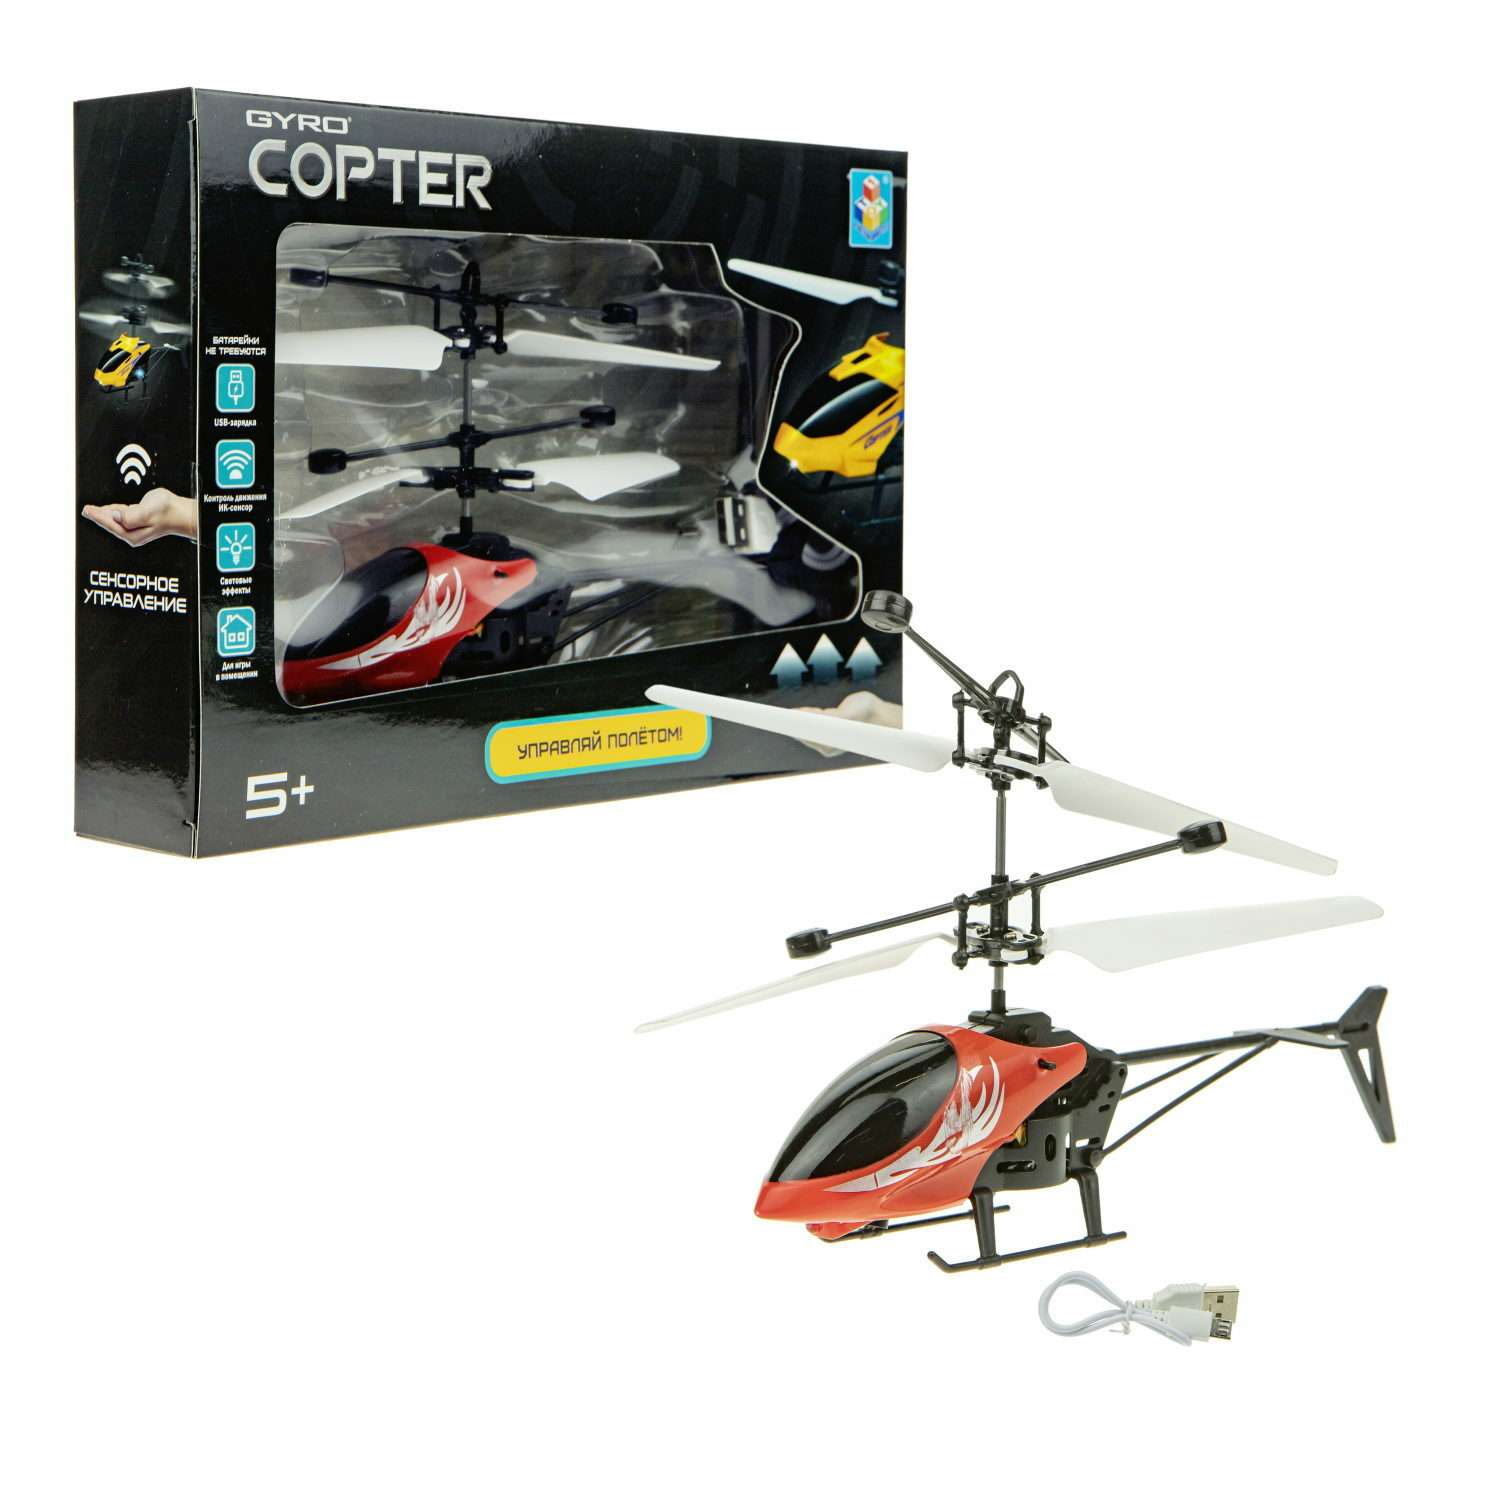 Интерактивная игрушка 1TOY Gyro-Copter вертолёт на сенсорном управлении со световыми эффектами Т15183 - фото 4